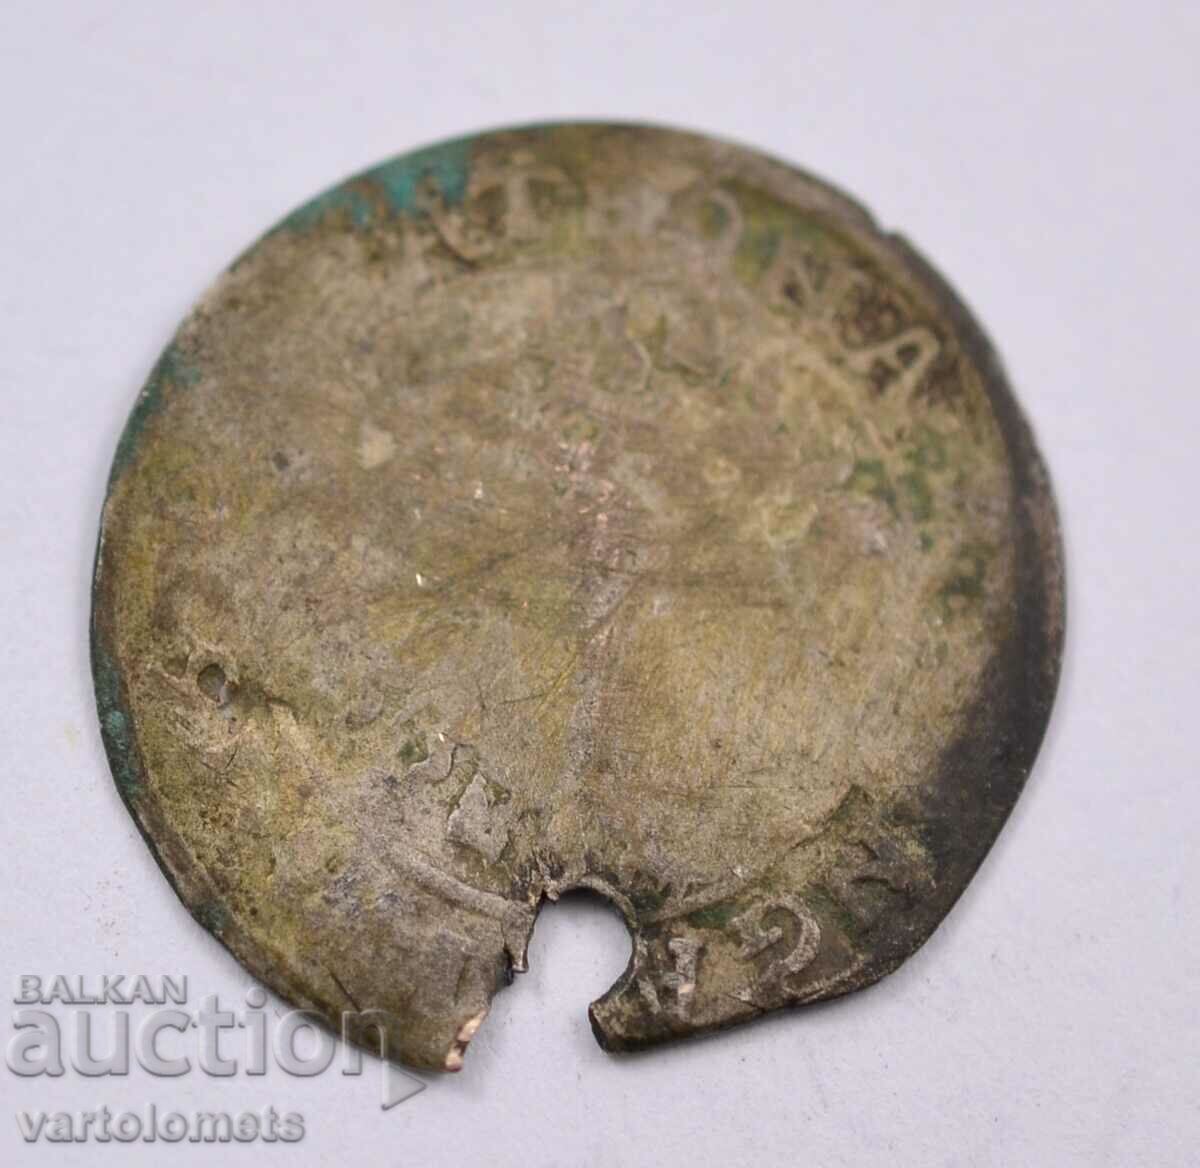 Silver coin 2.4g/25mm - Ottoman Empire